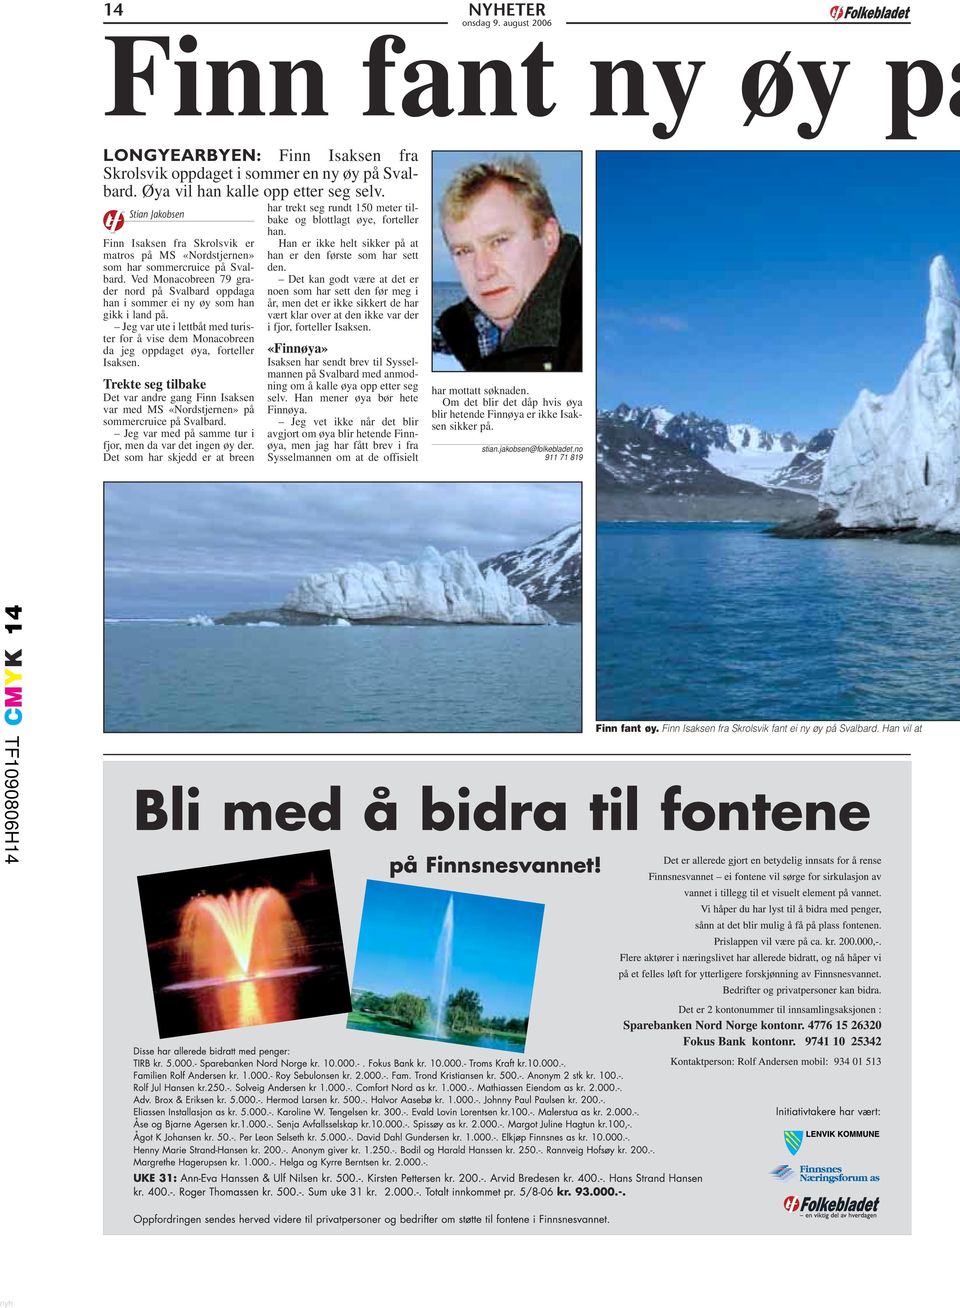 Ved Monacobreen 79 grader nord på Svalbard oppdaga han i sommer ei ny øy som han gikk i land på. Jeg var ute i lettbåt med turister for å vise dem Monacobreen da jeg oppdaget øya, forteller Isaksen.